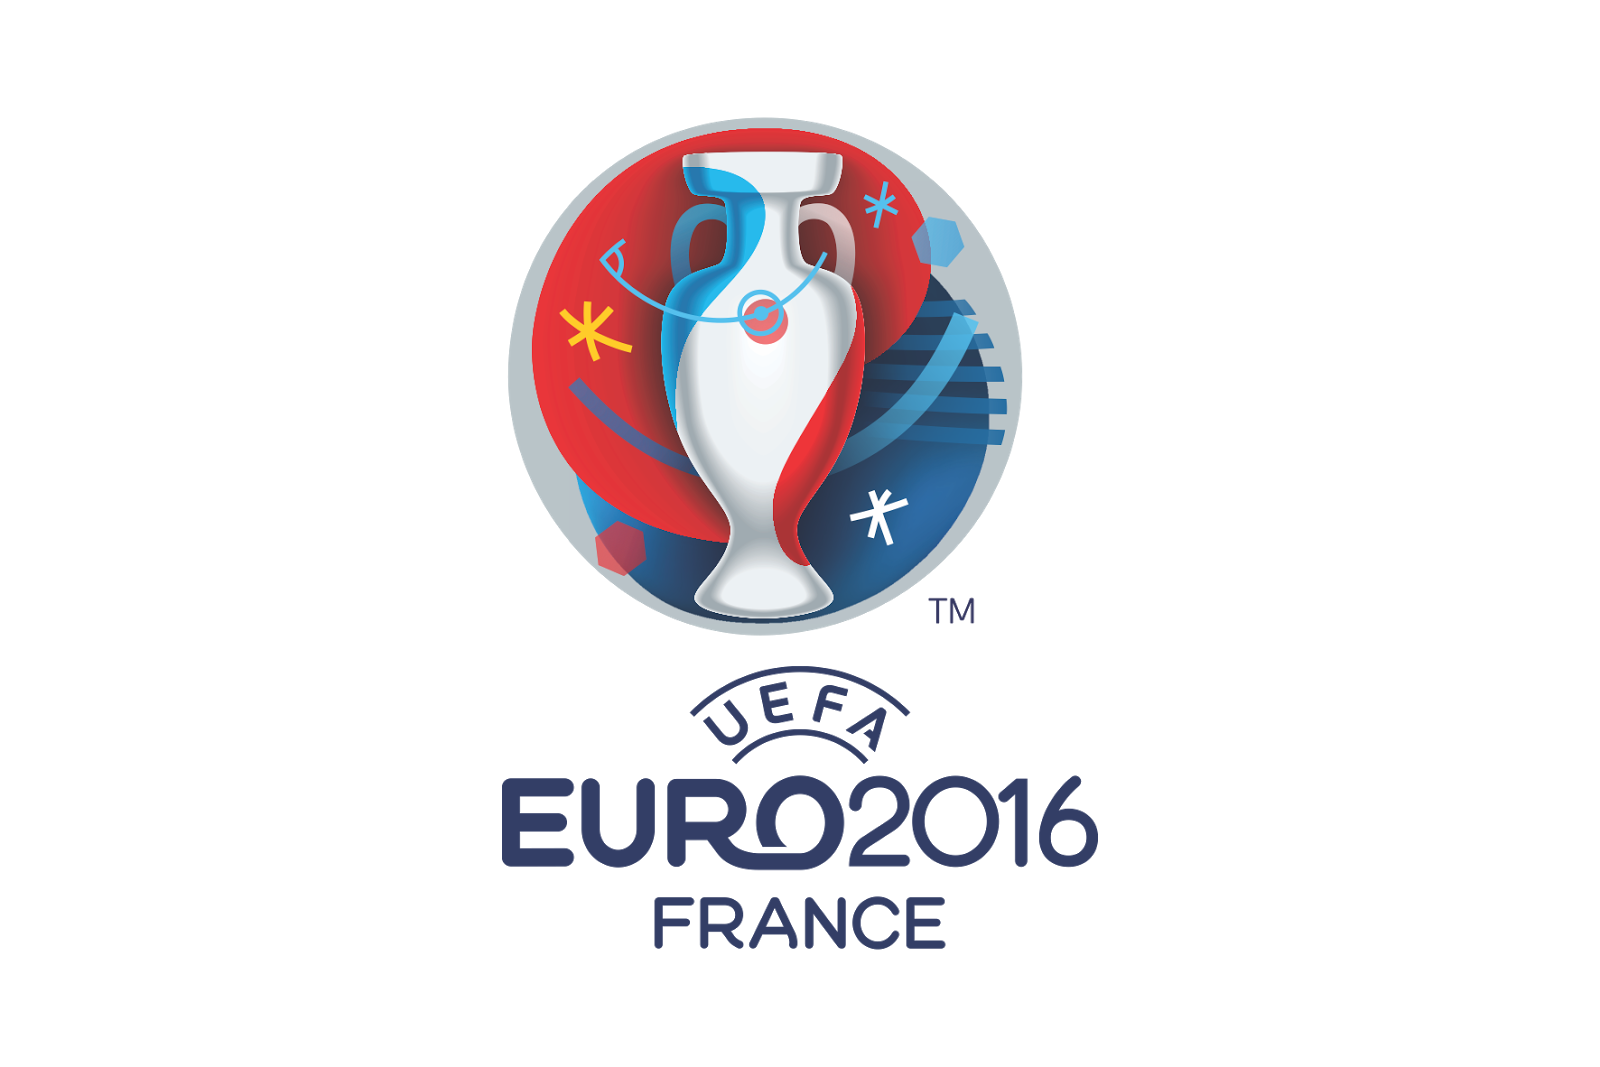 Euro 2016 | Superbru Entry Details